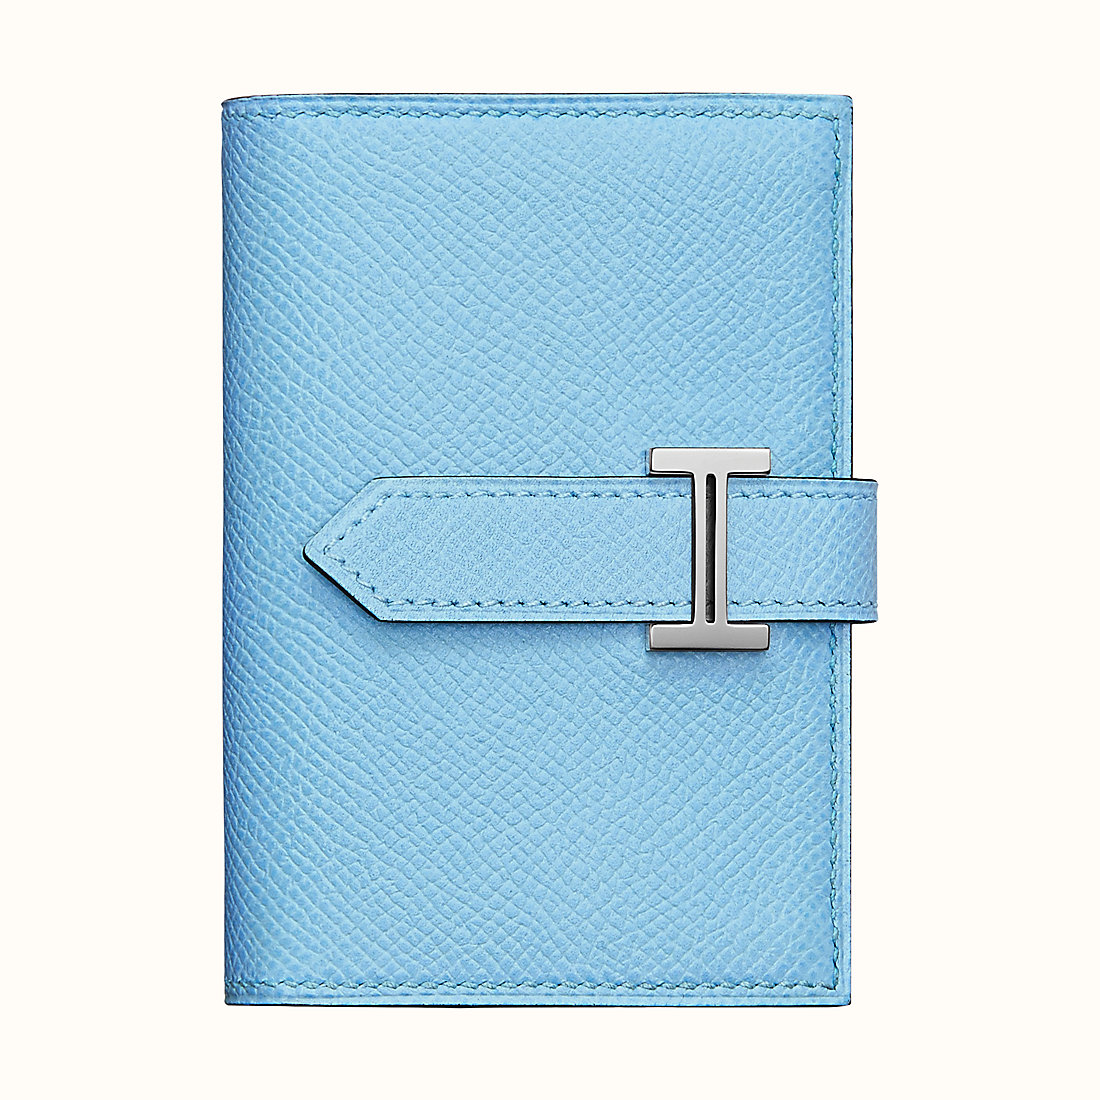 臺灣宜蘭縣愛馬仕短錢包尺寸 Hermes Bearn mini wallet CK7N Céleste 天藍色